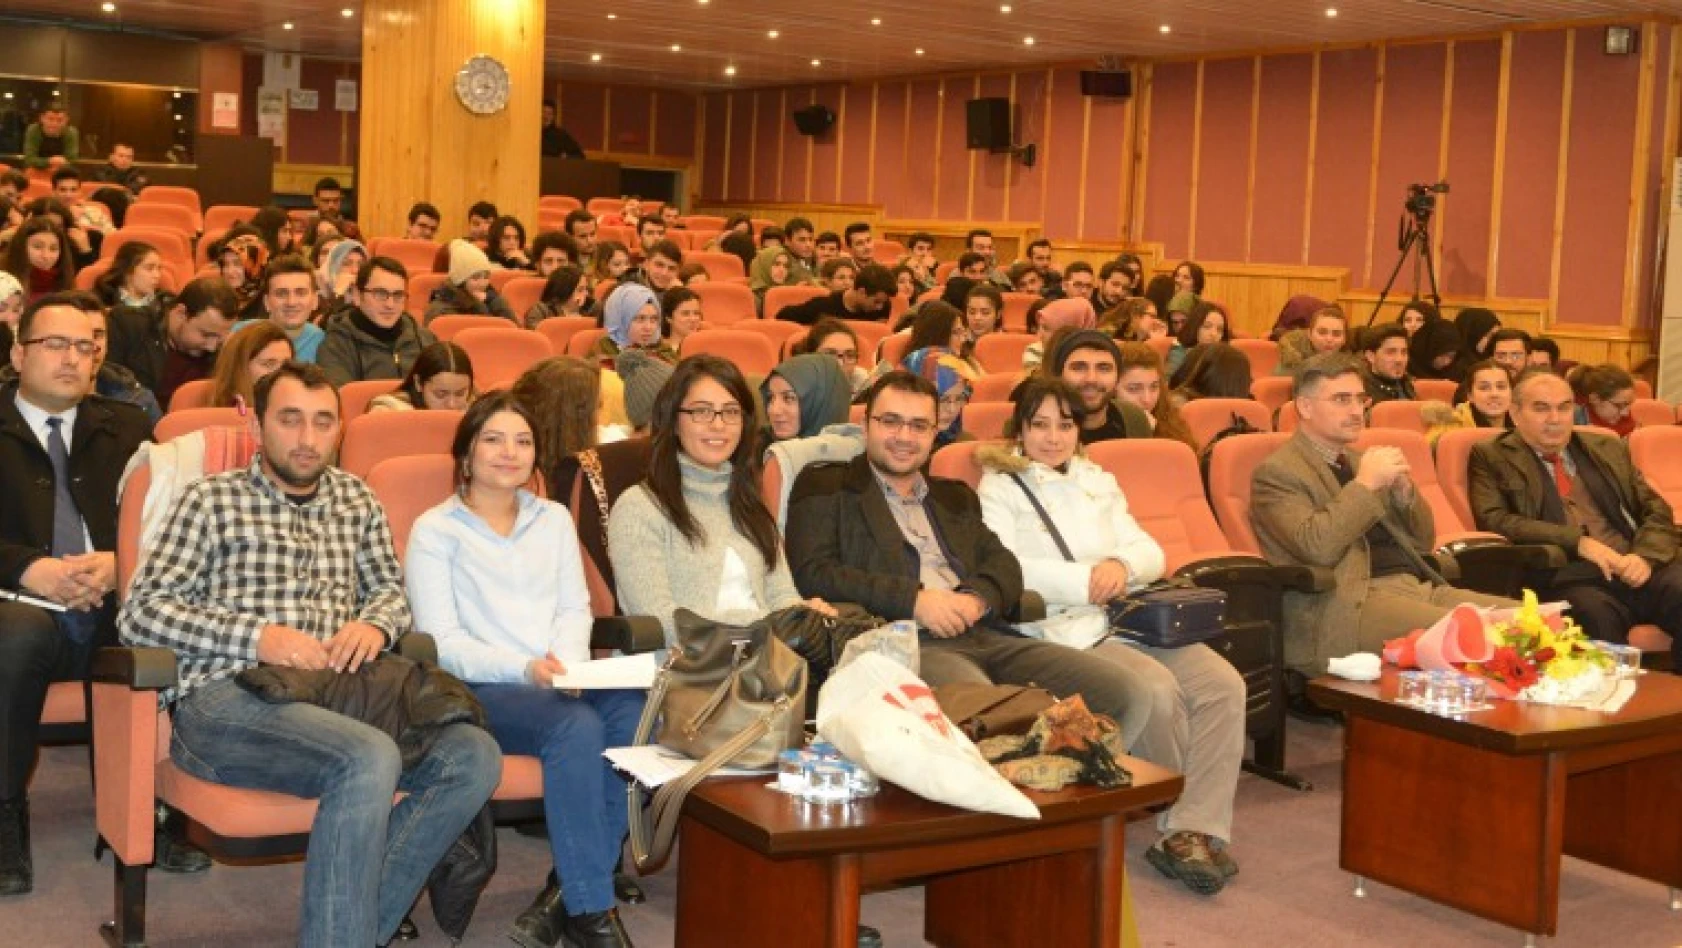 Odtü öğretim üyesi tavşanoğlu'ndan konferans